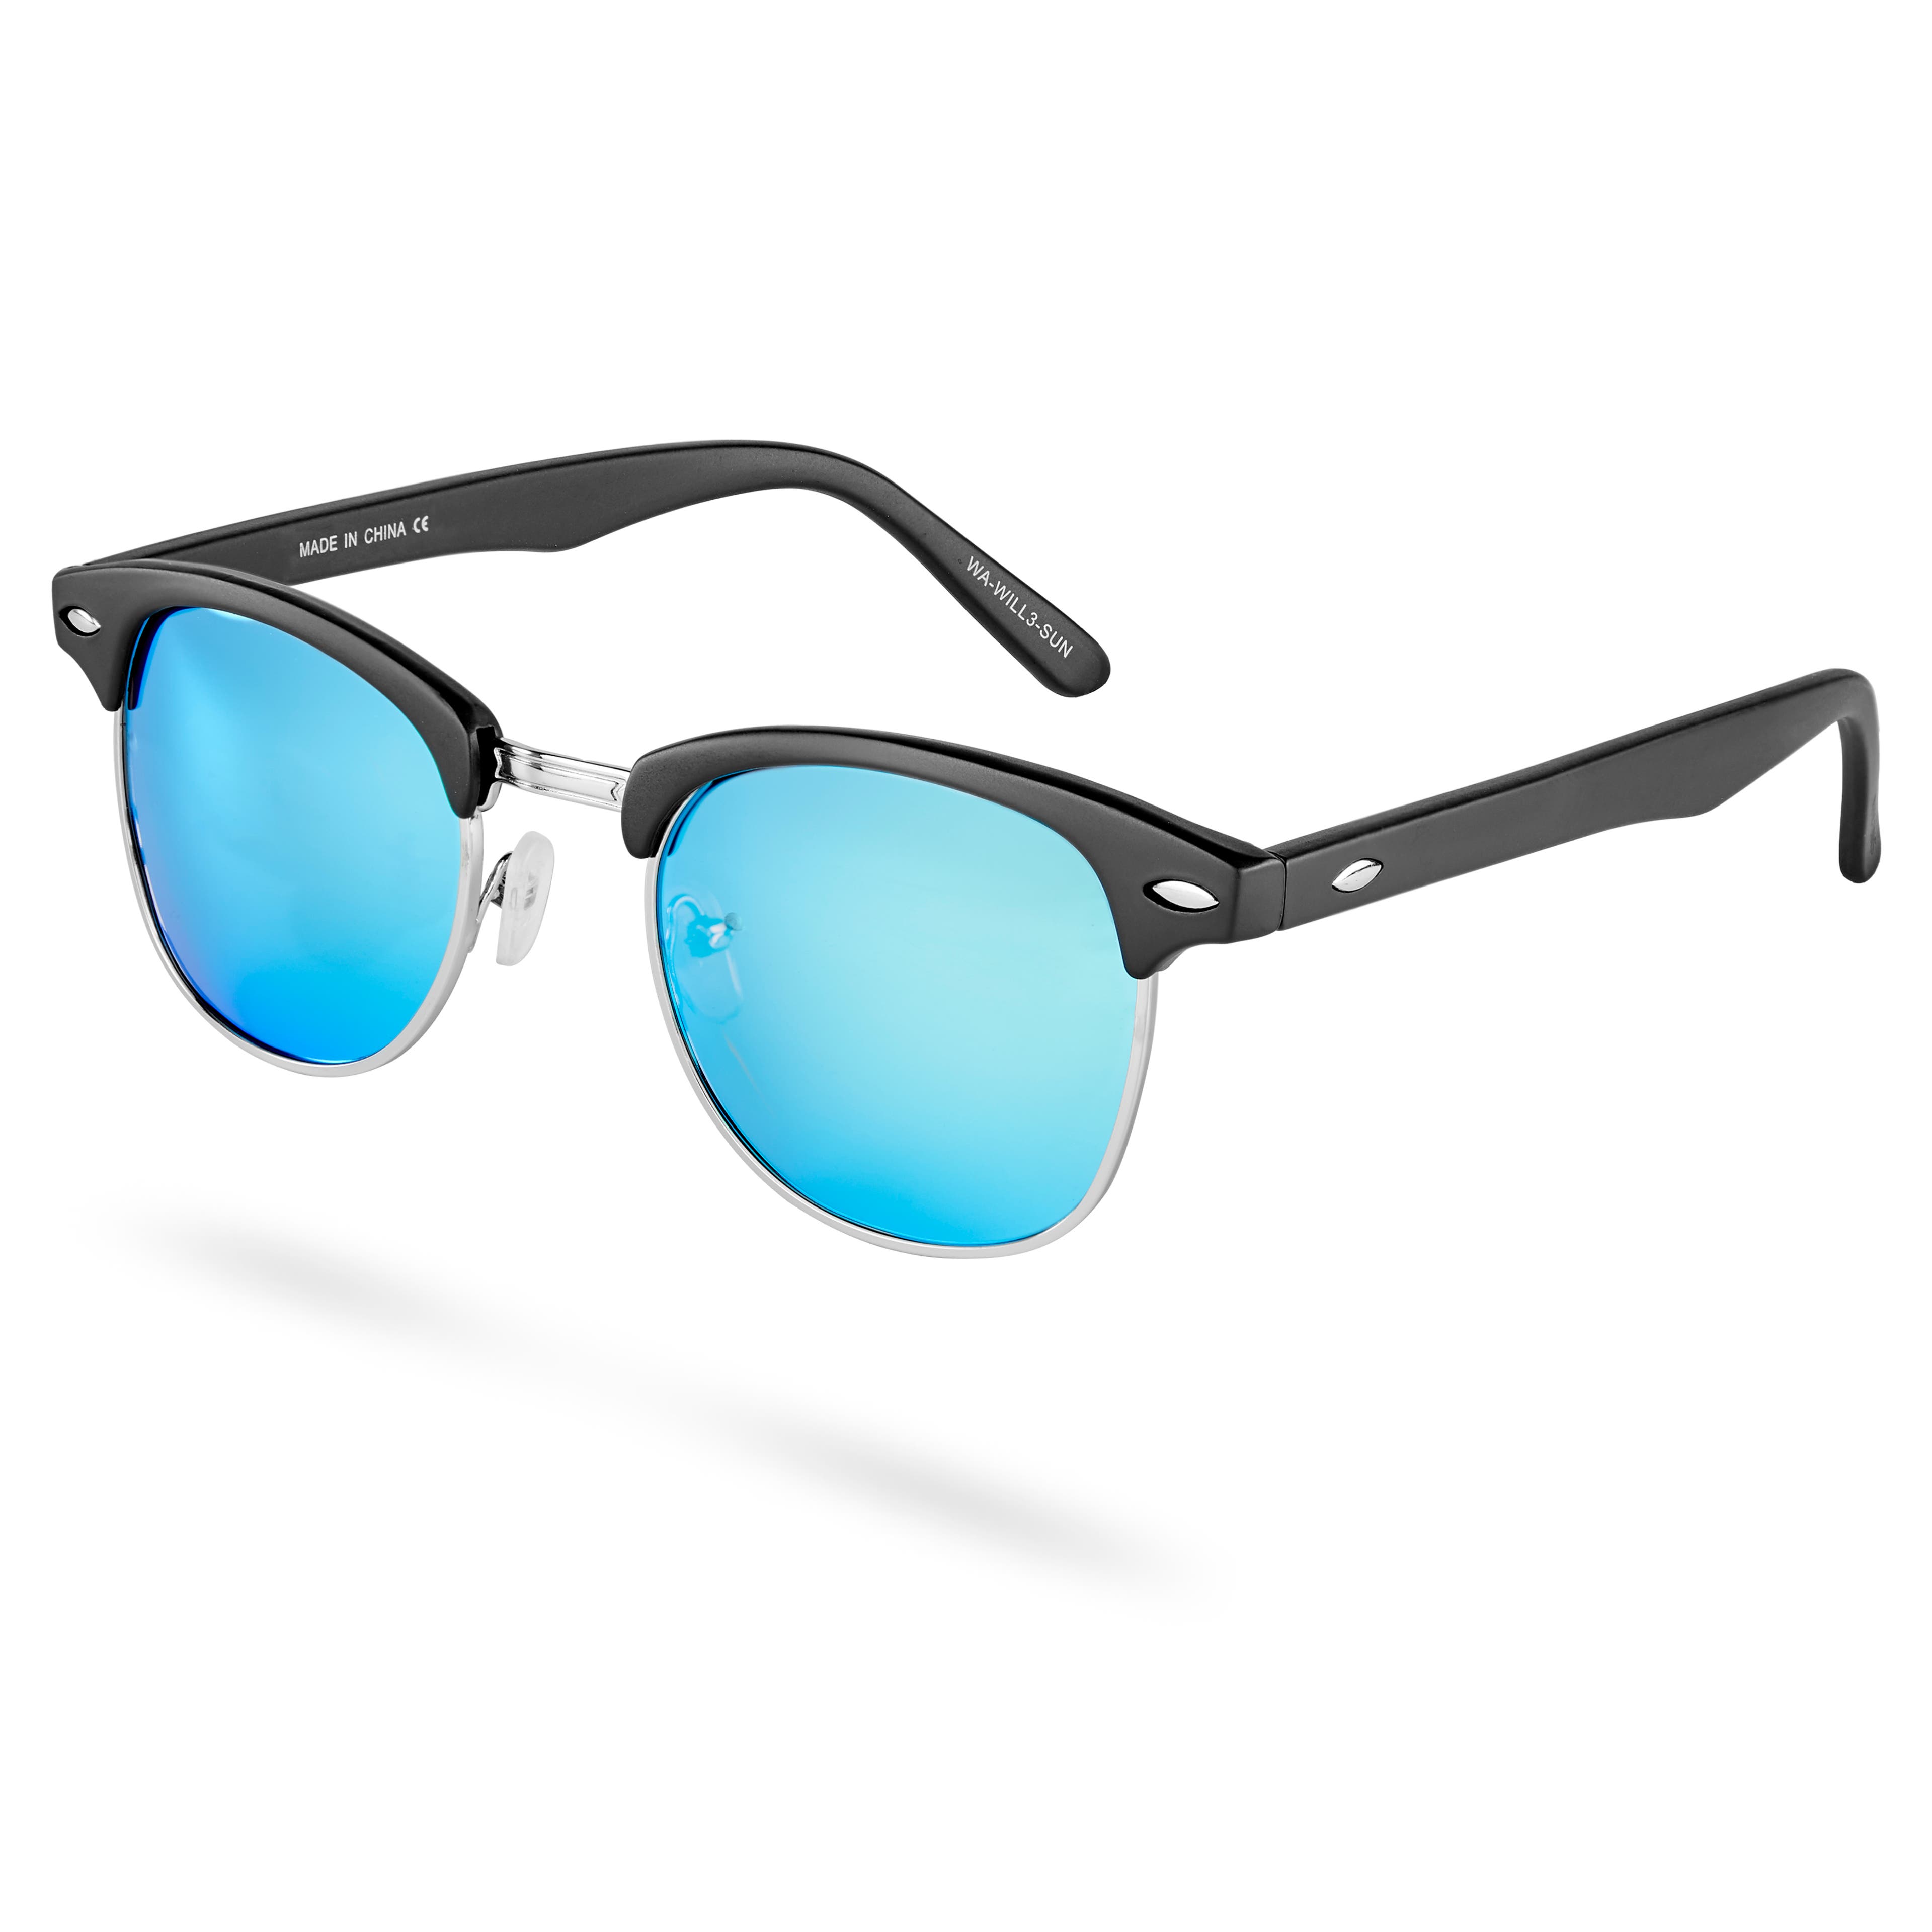 Will Blue-Mirror Vista Sunglasses